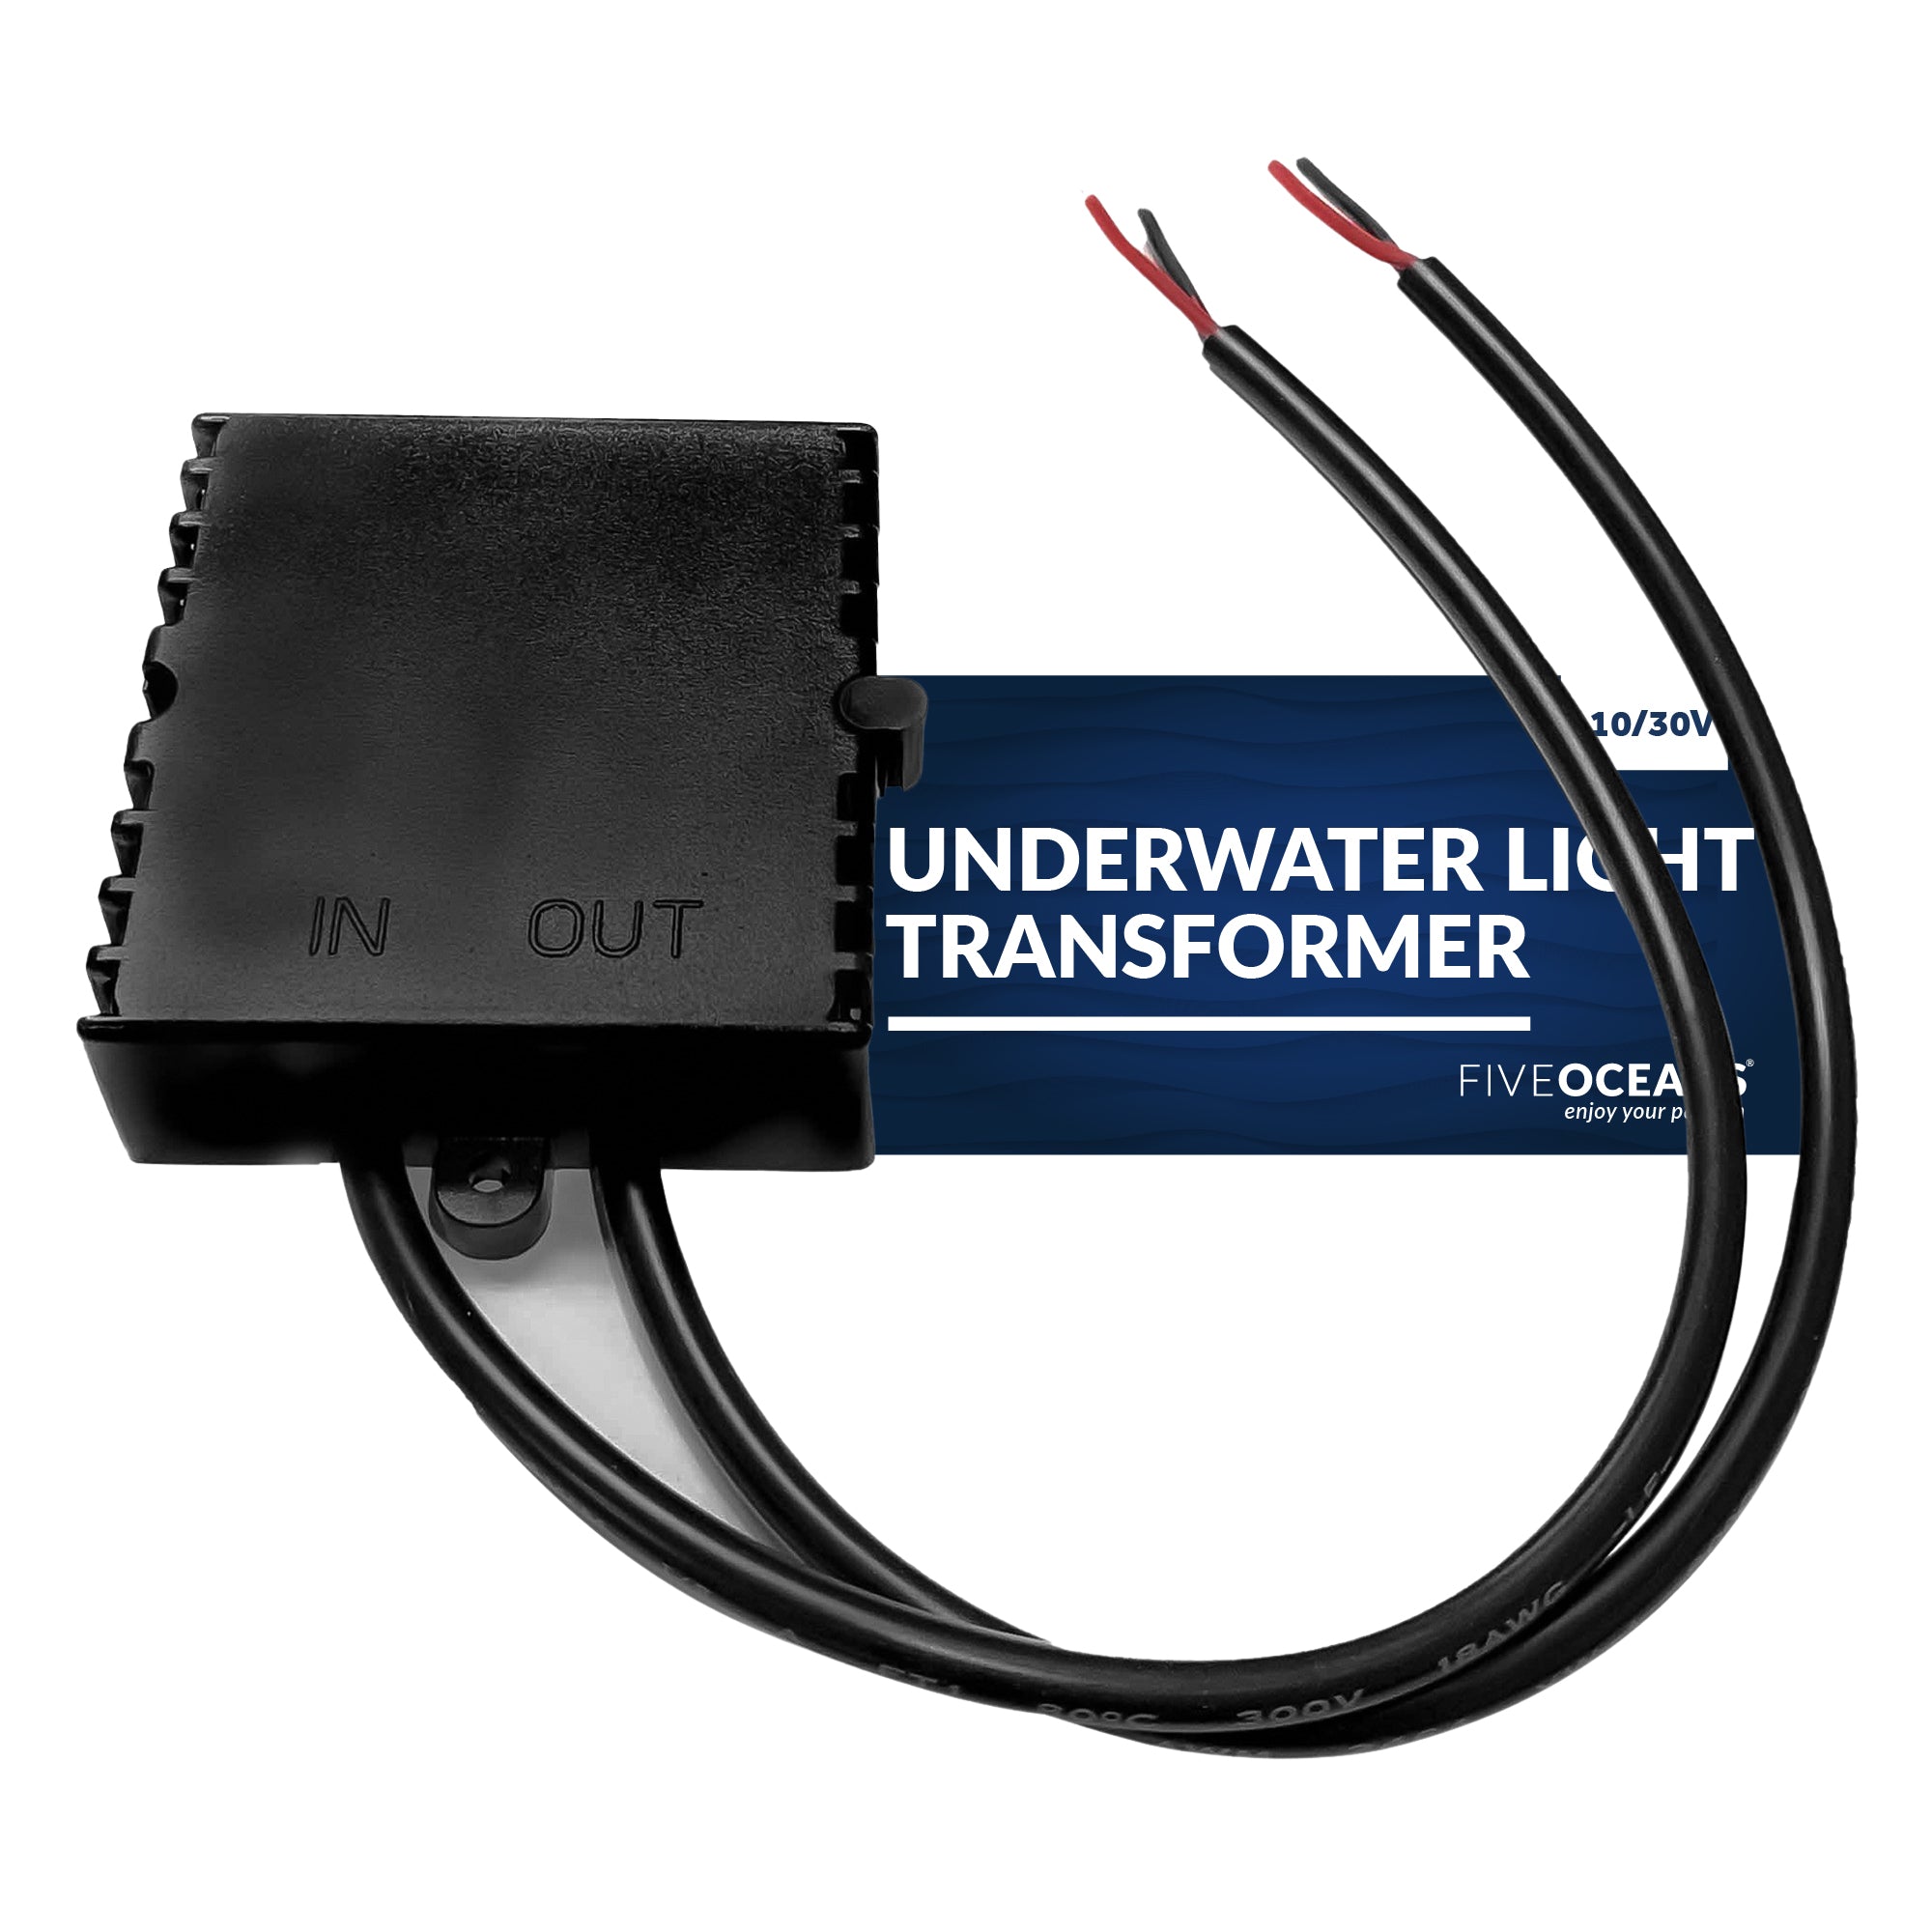 LED Underwater Light Driver Transformer 10/30V - 580mamp - FO4376